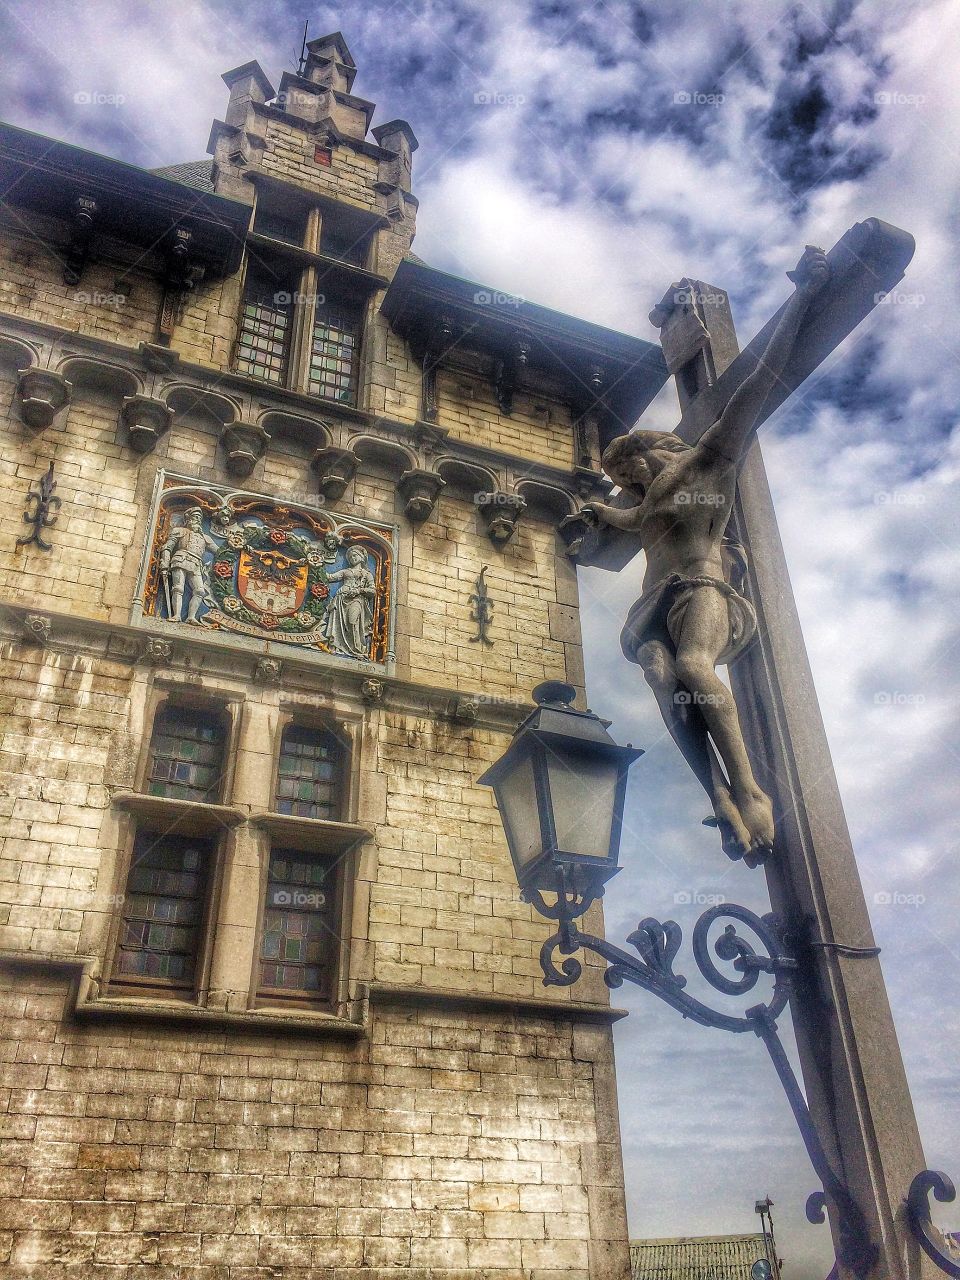 The Cross. Castle in Antwerpen 